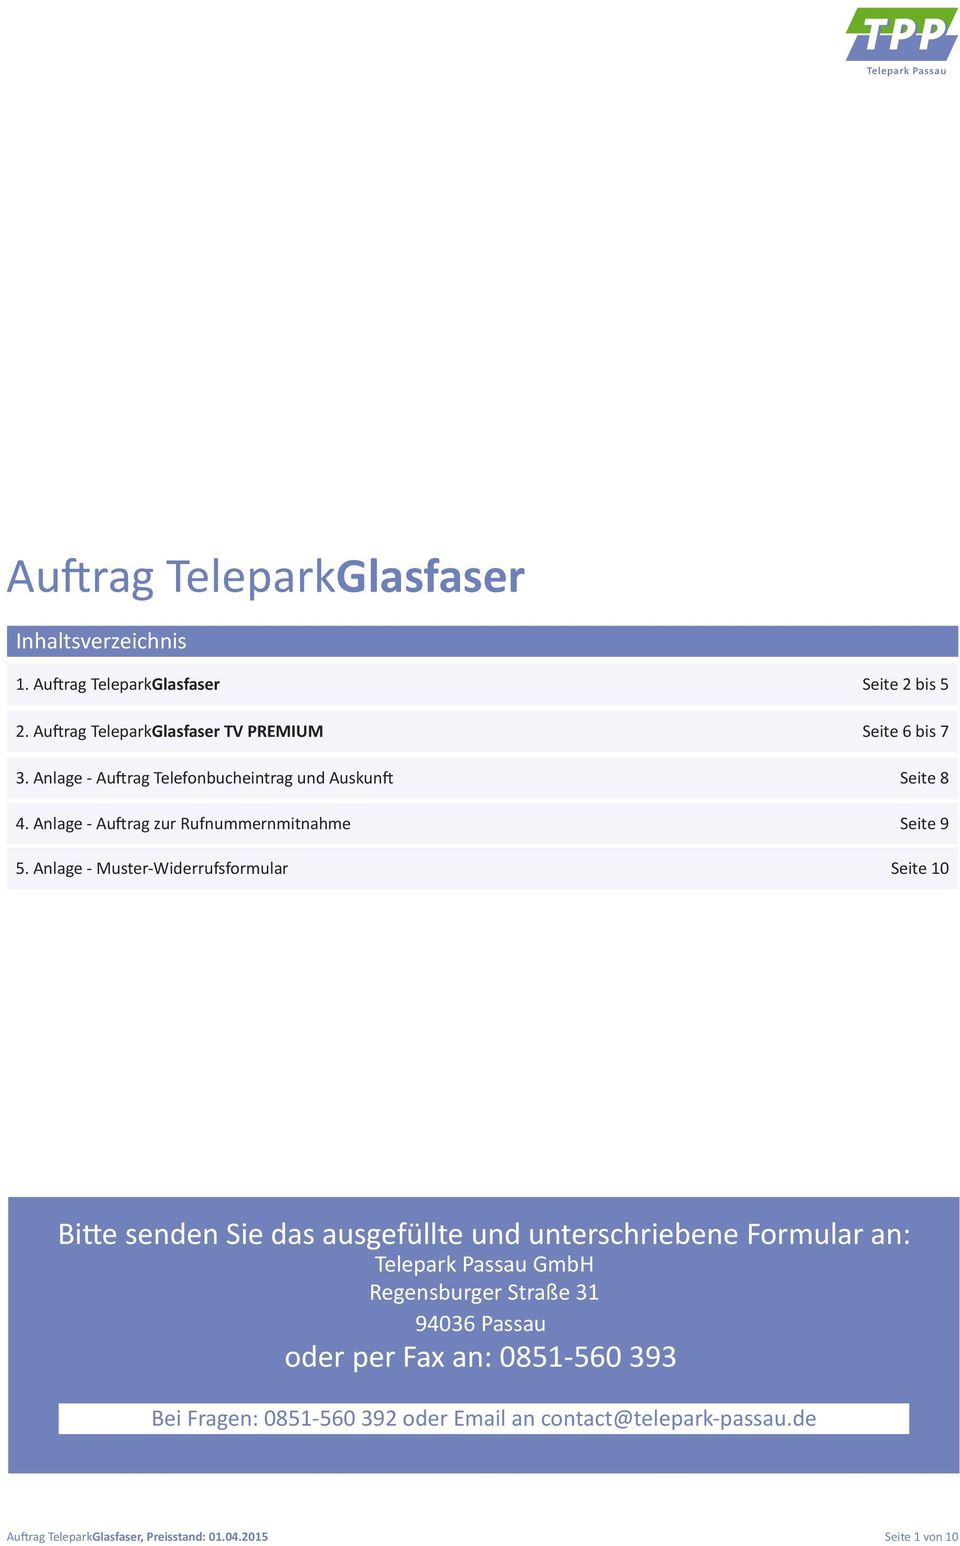 Anlage - Muster-Widerrufsformular Seite 10 Bitte senden Sie das ausgefüllte und unterschriebene Formular an: Telepark Passau GmbH Regensburger